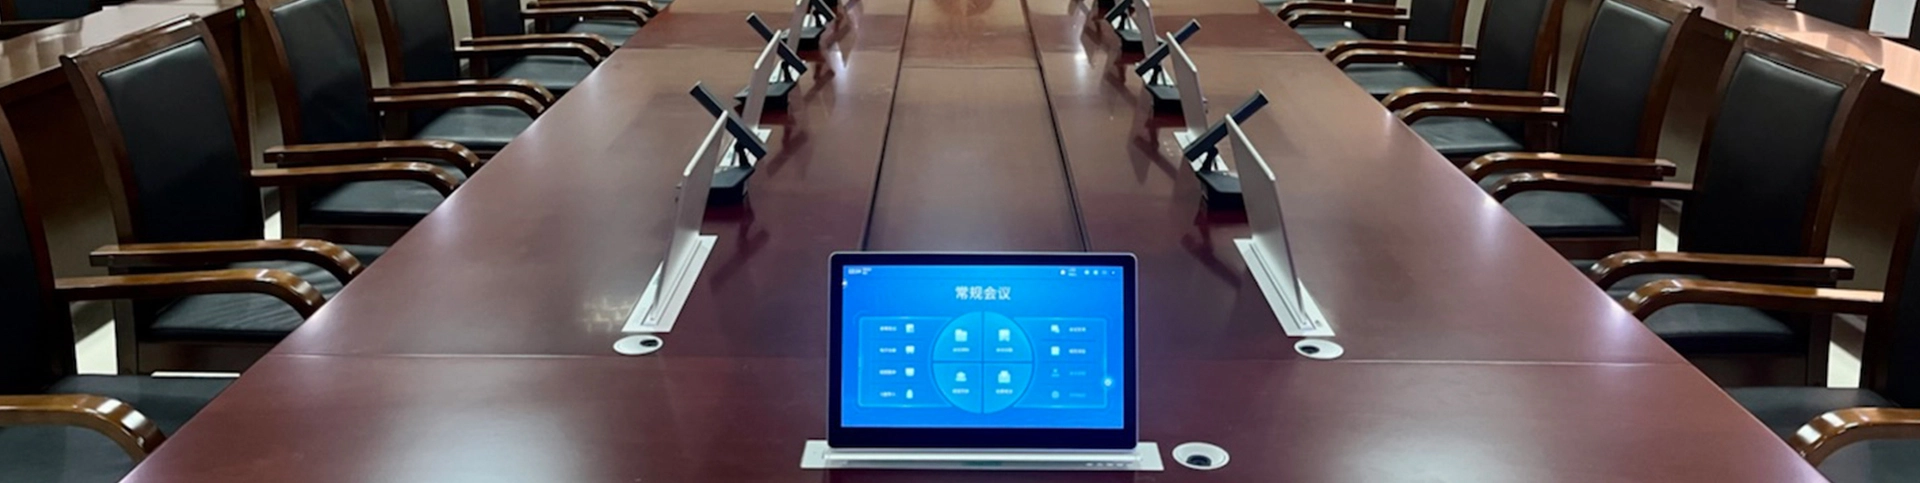 ระบบการประชุมไร้กระดาษสำหรับโครงการ Zhanjiang Court